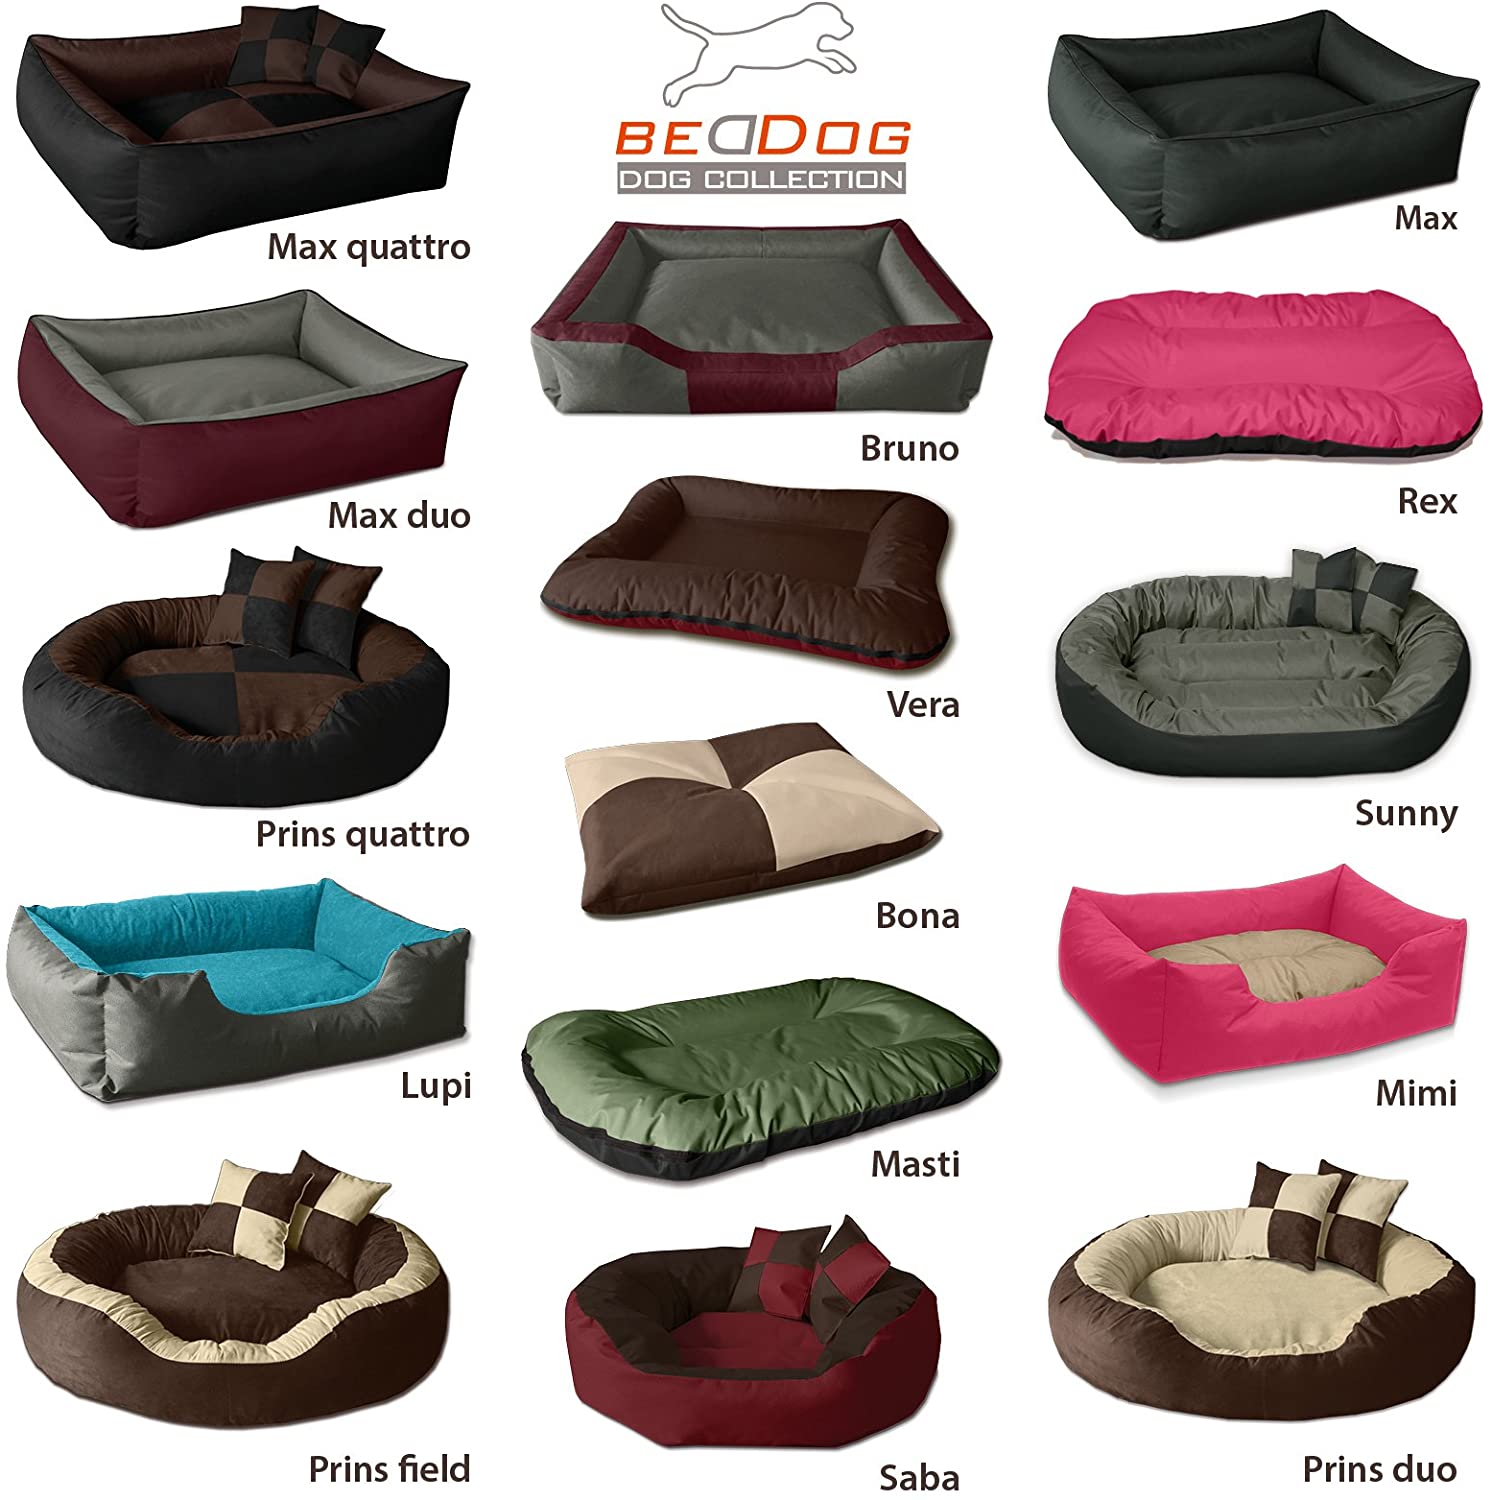  BedDog® 2en1 colchón para Perro MAX Quattro L hasta XXXL, 9 Colores, Cama, sofá,Cesta para Perro 